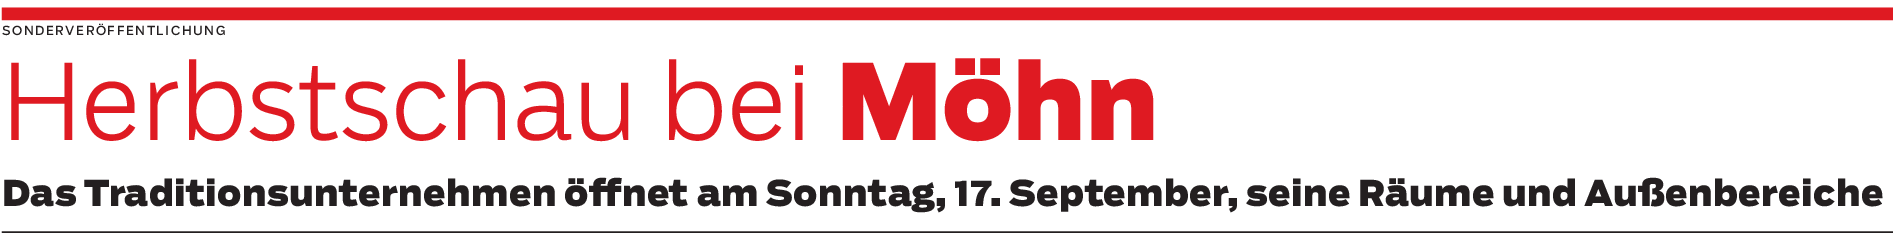 Firma Möhn in Dettingen: Inspirationen fürs Draußen